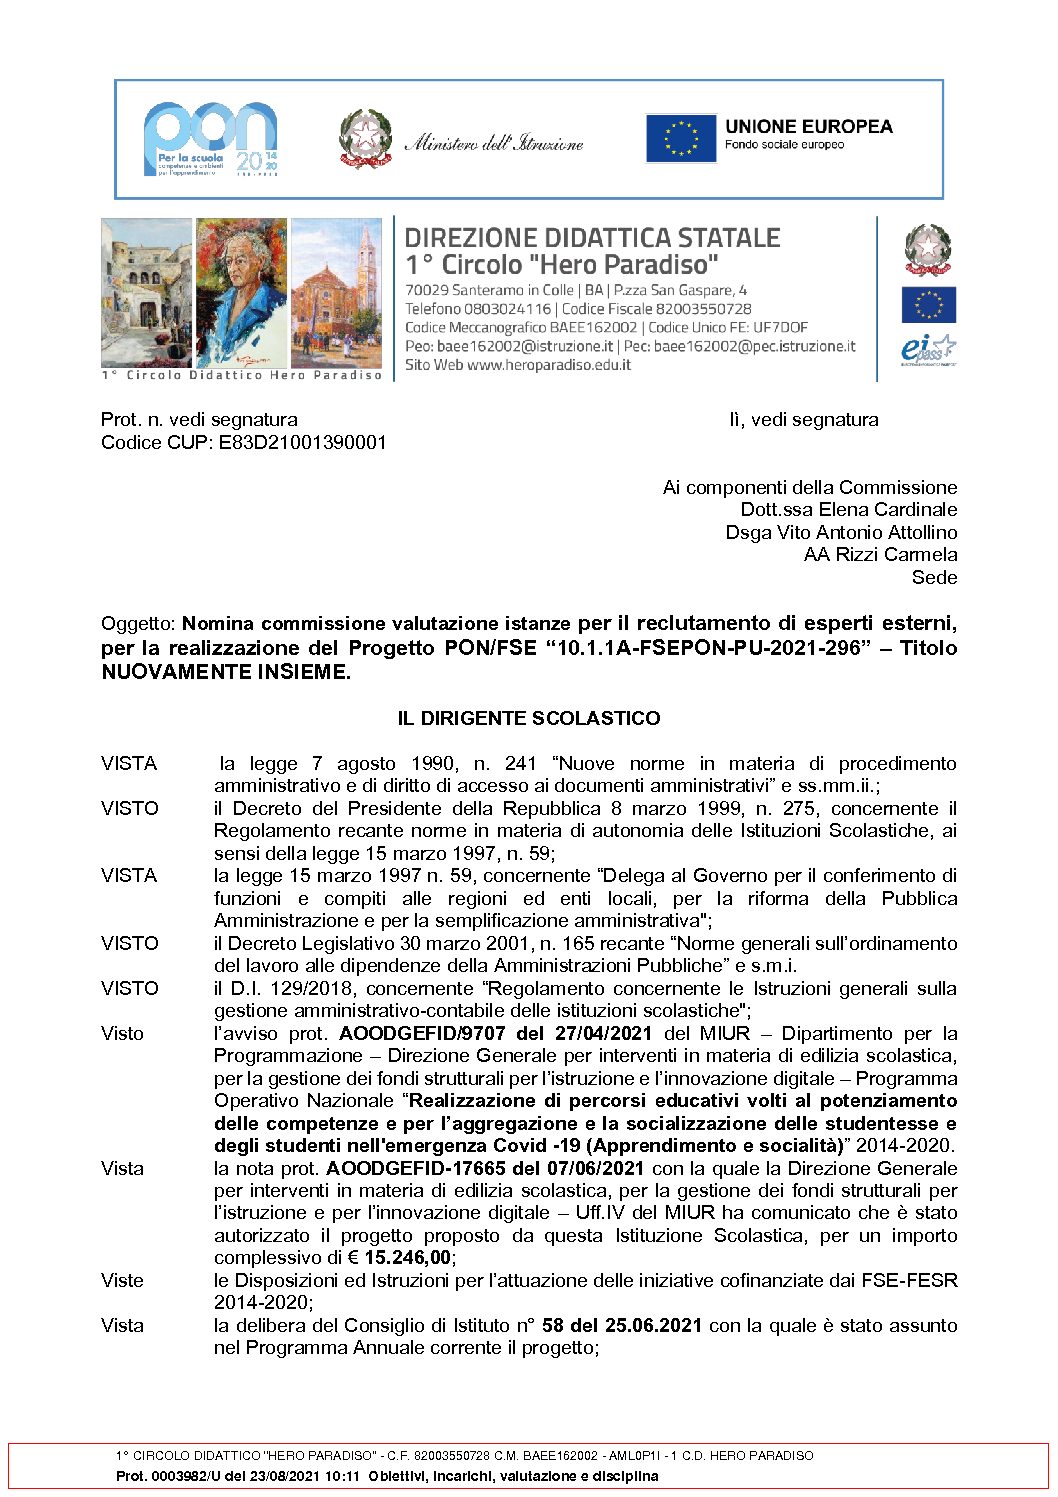 2._Nomina_commissione_di_valutazione_Esterni_2021-296.pdf.pades